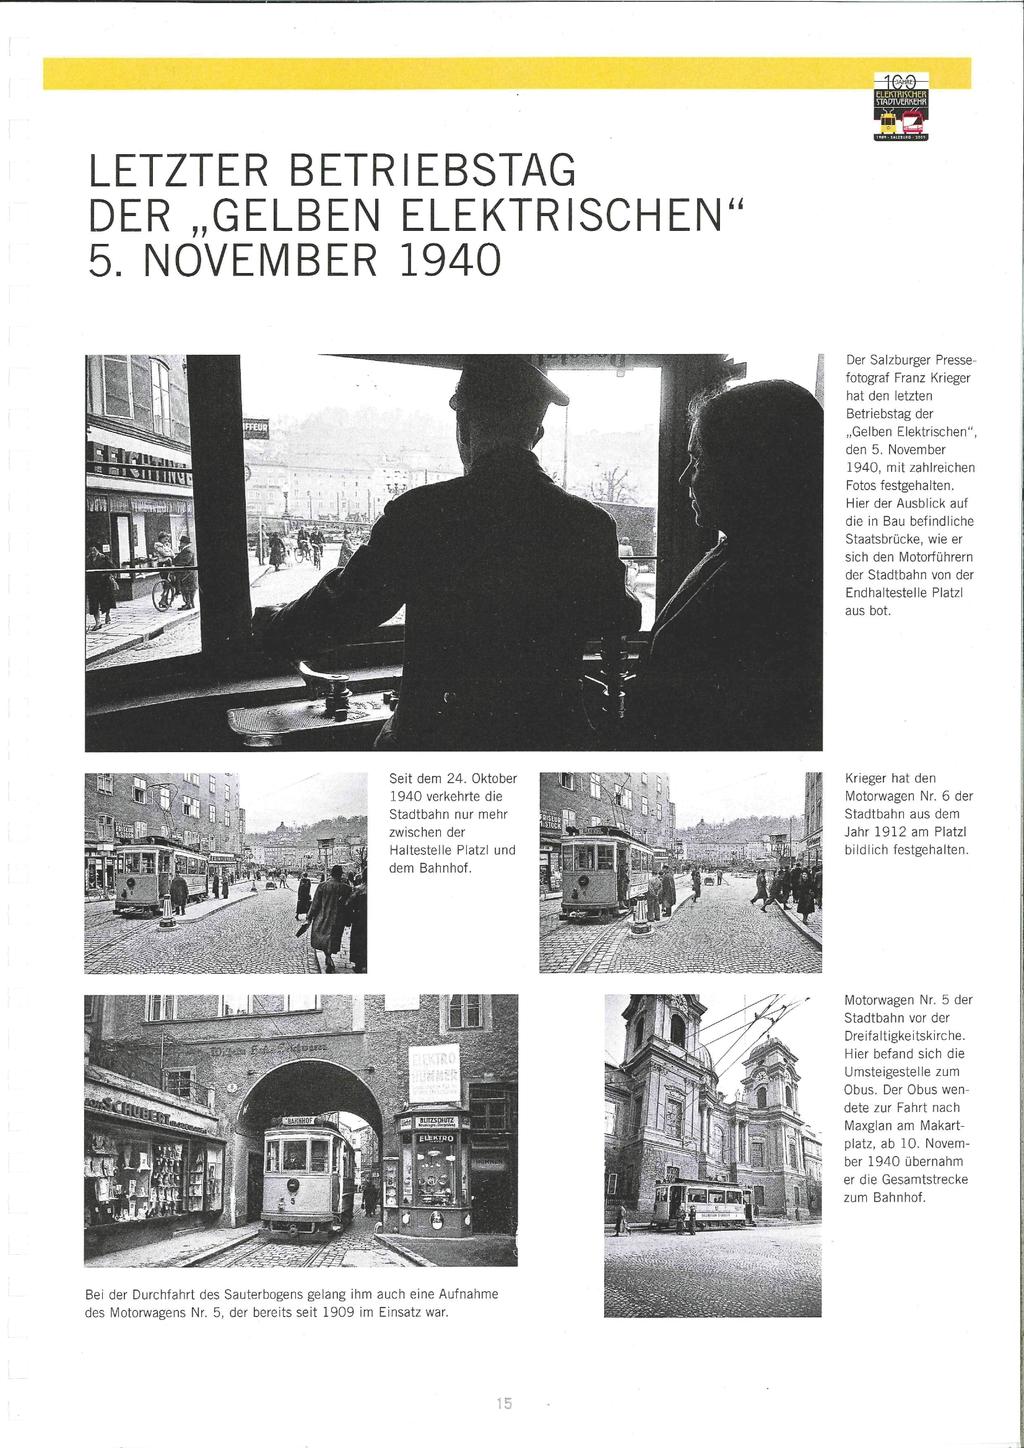 LETZTER BETRIEBSTAG DER GELBEN ELEKTRISCHEN" 5. NOVEMBER 1940 Der Salzburger Pressefotograf Franz Krieger hat den letzten Betriebstag der Gelben Elektrischen", den 5.